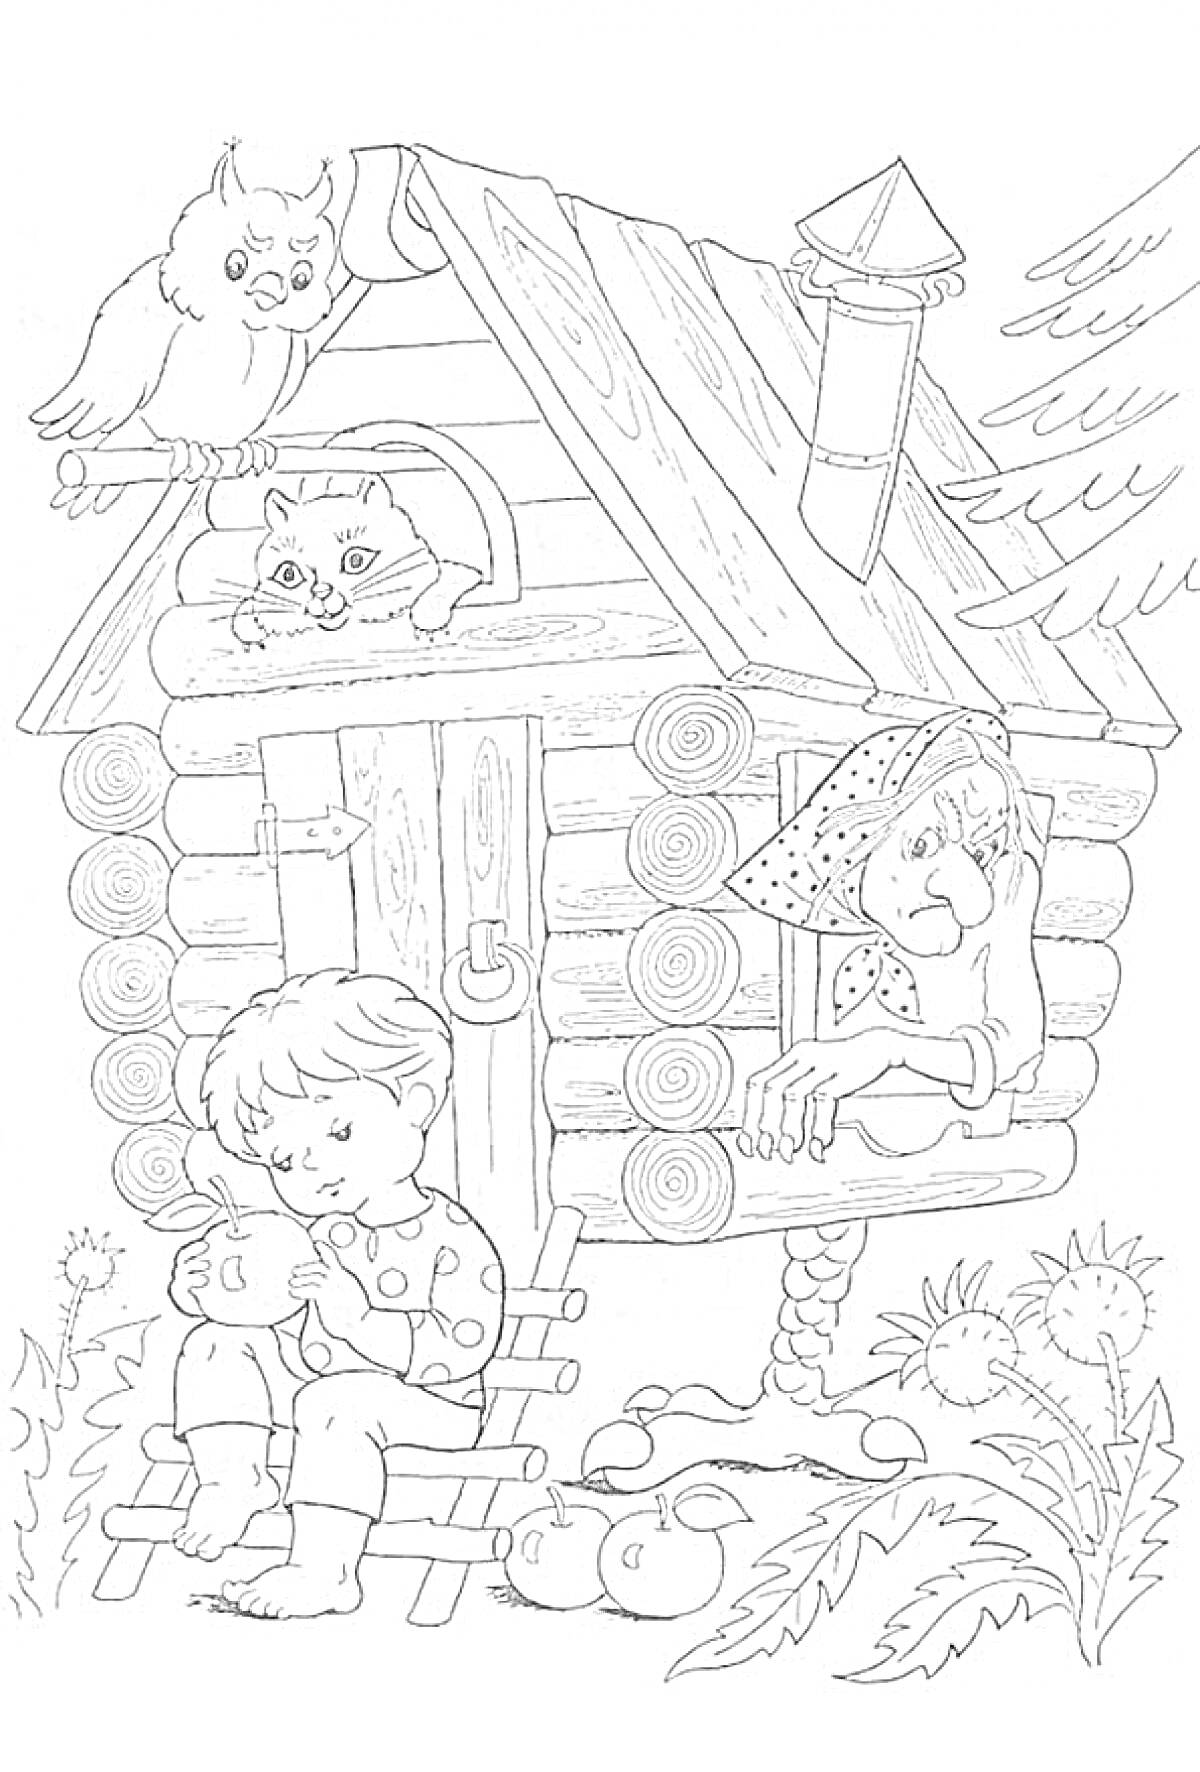 Раскраска Мальчик с куклой возле избушки на курьих ножках, в которой находится Баба Яга, на крыше сидят филин и кот.